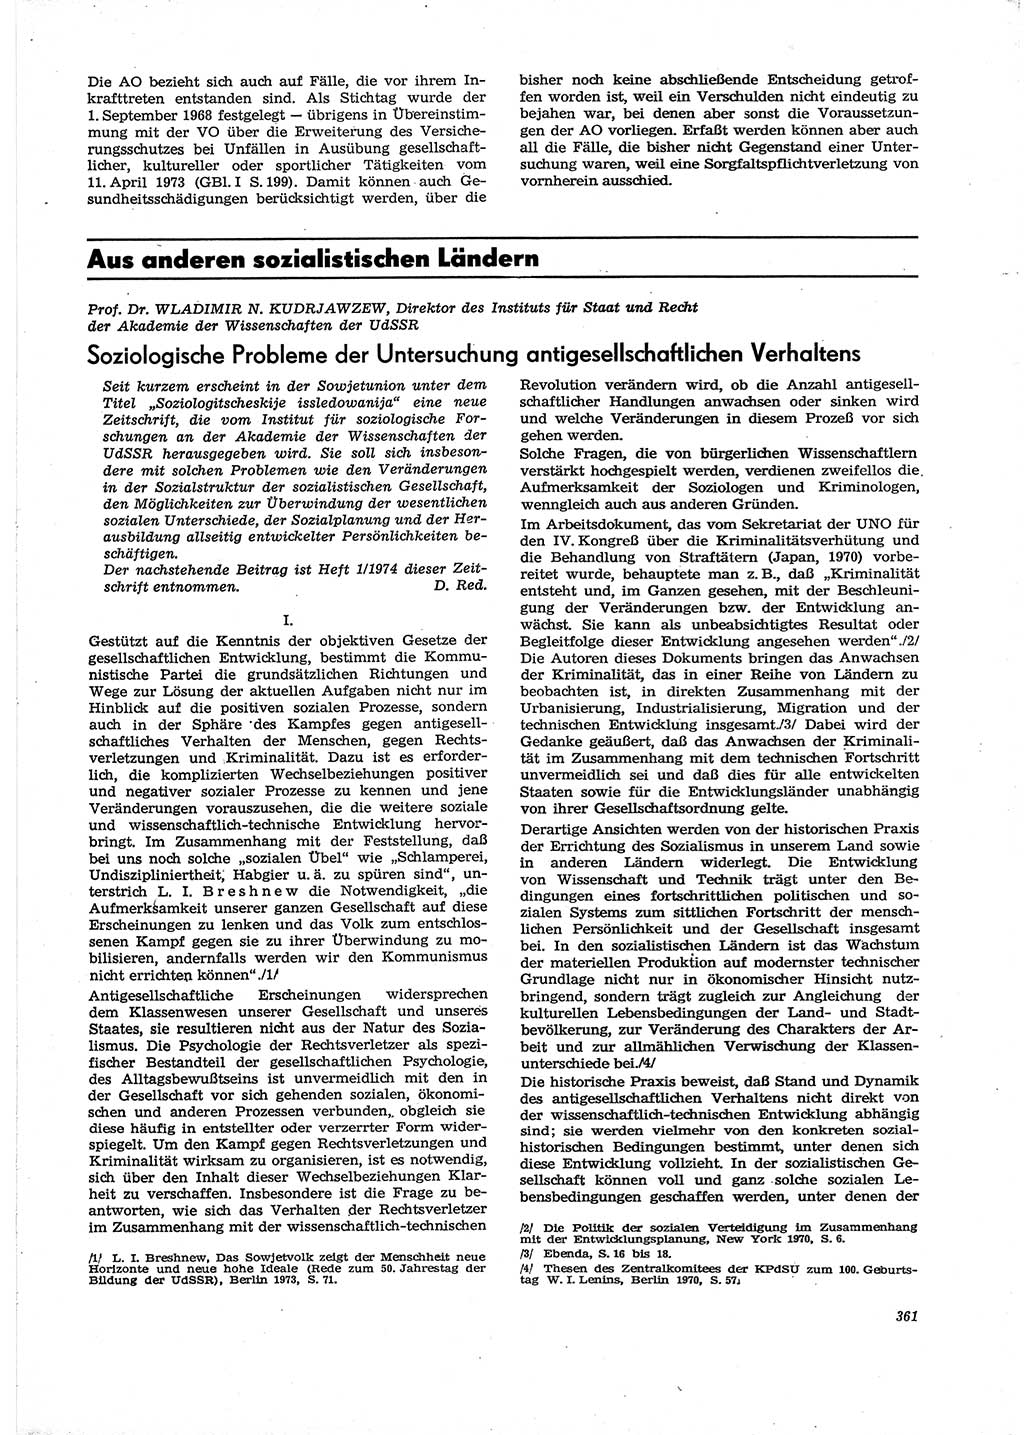 Neue Justiz (NJ), Zeitschrift für Recht und Rechtswissenschaft [Deutsche Demokratische Republik (DDR)], 29. Jahrgang 1975, Seite 361 (NJ DDR 1975, S. 361)